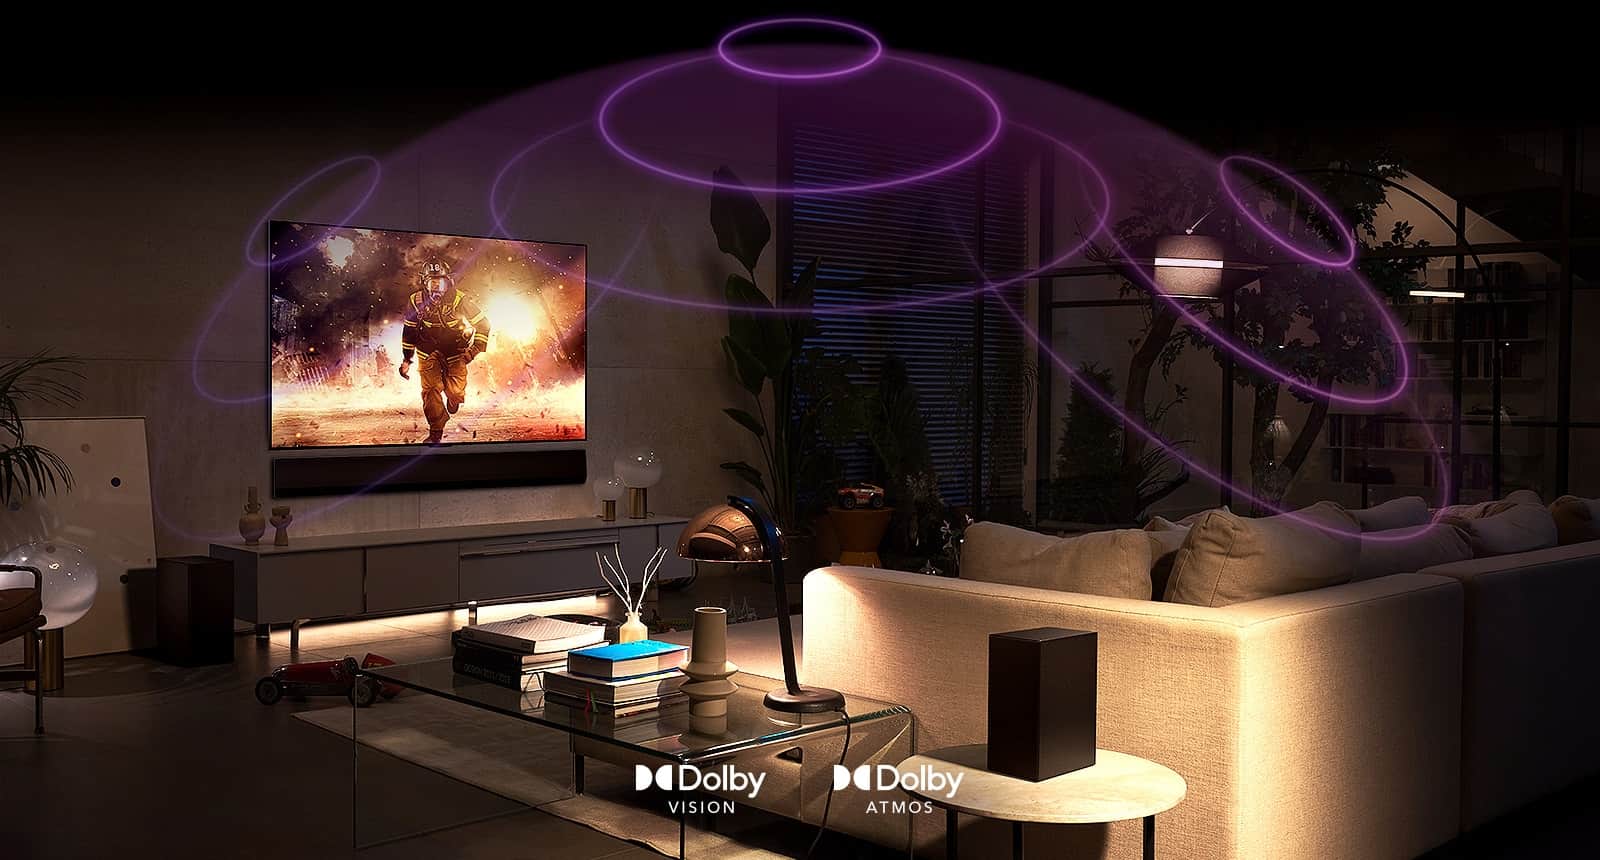 Фотографія OLED-телевізора LG у кімнаті зі сценою з бойовика. Звукові хвилі створюють купол між диваном і телевізором, створюючи захоплюючий об’ємний звук.